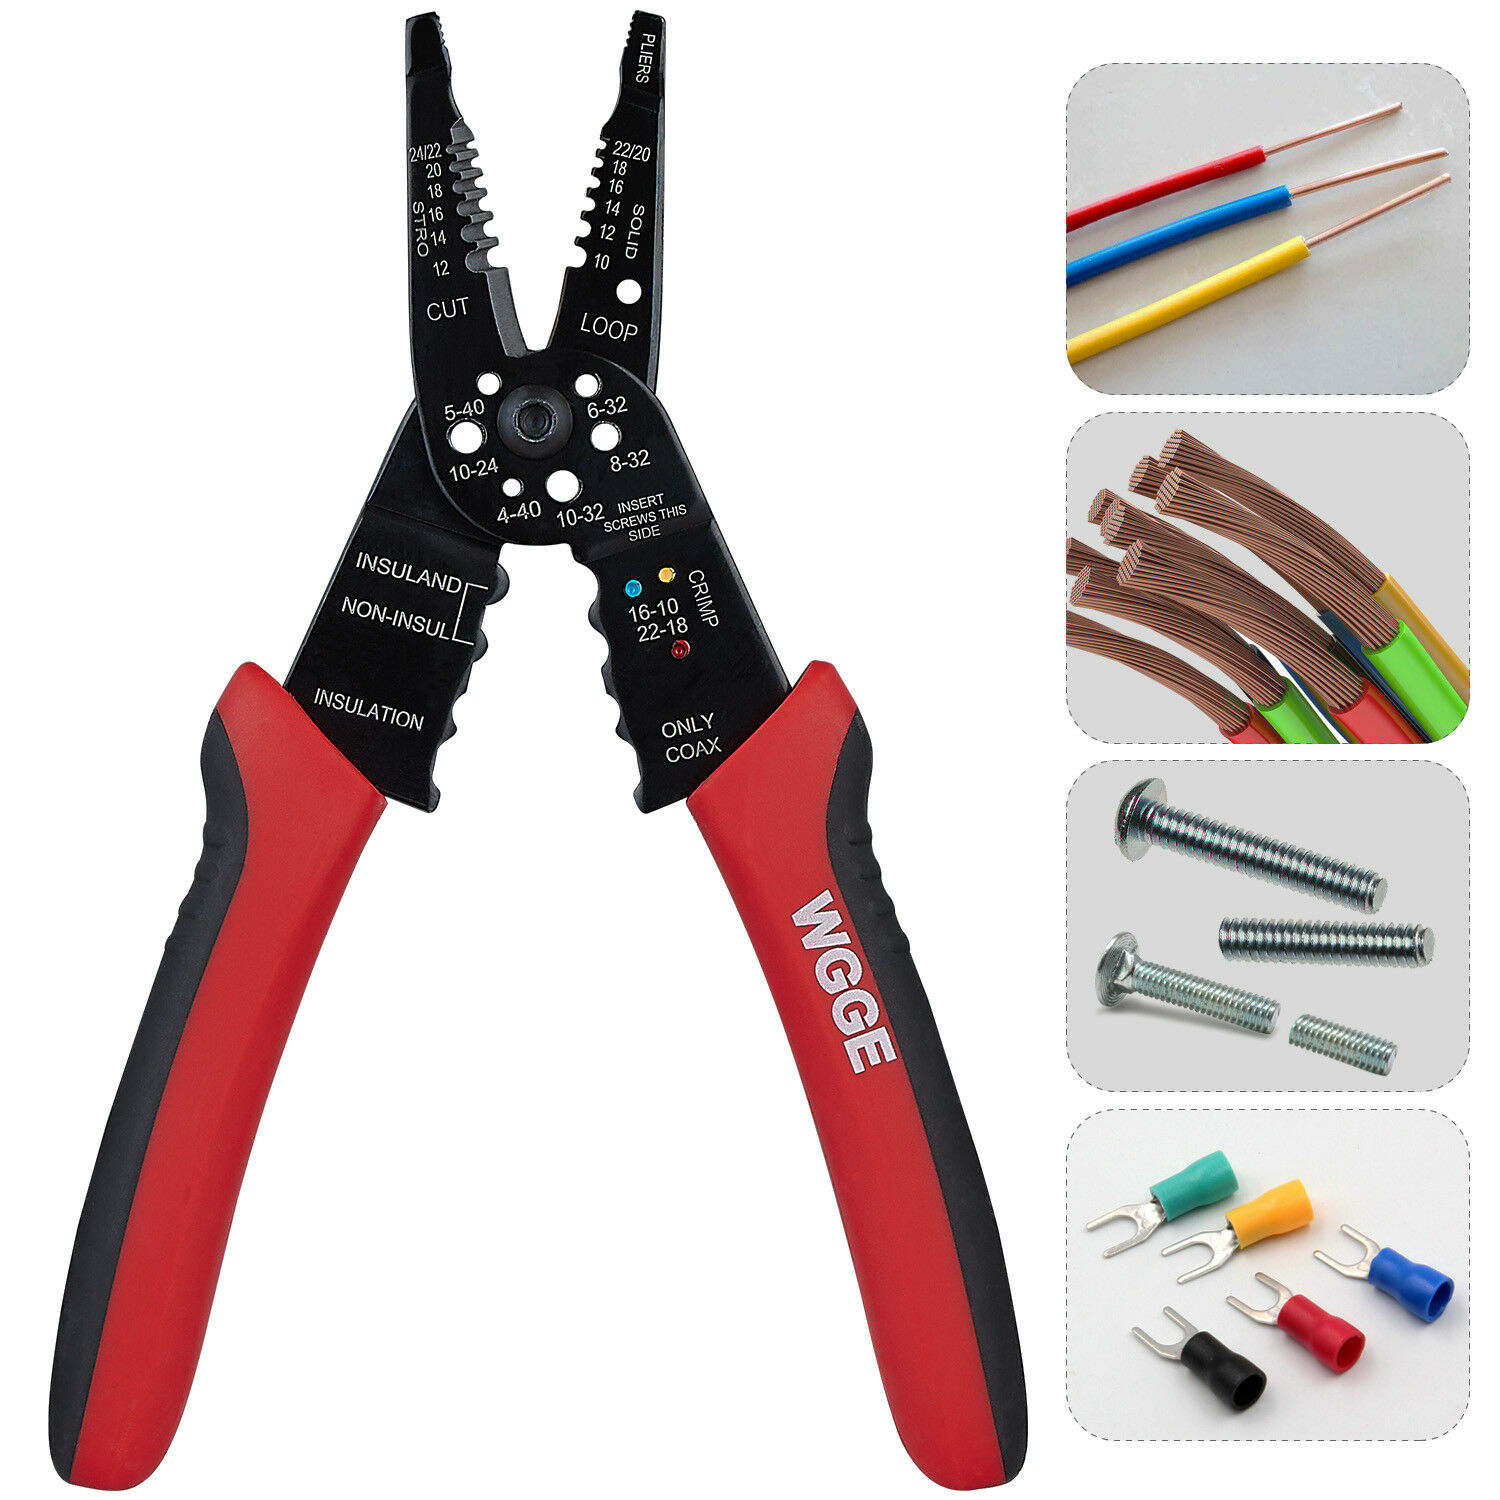 Wgge Wg-015 Professional Crimping Tool / Multi-tool Wire Stripper/cutter/crimper